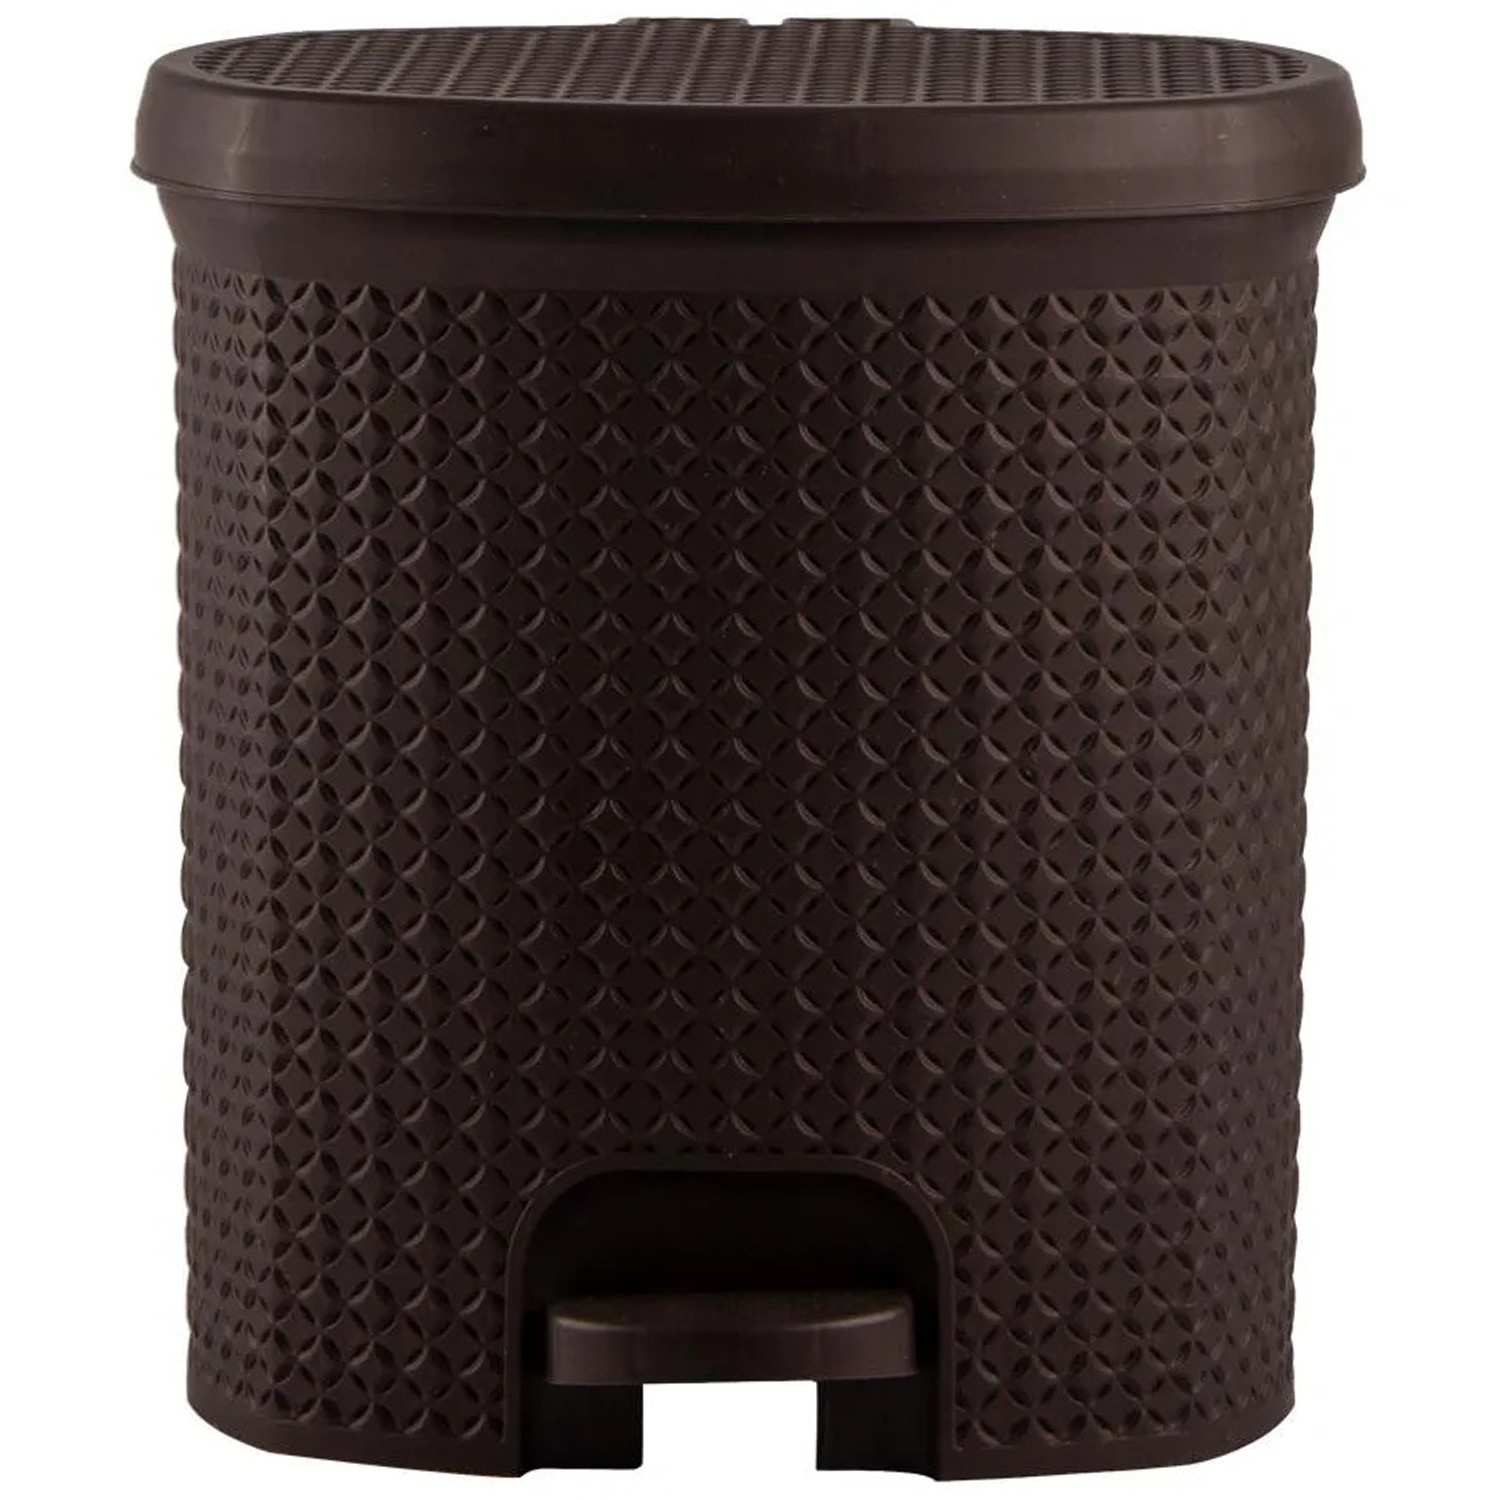 Kuber Industries Dustbin|Plastic Pedal Dustbin|Kitchen Inner Bucket Waste Paper Bin|Dustbin For Bedroom|Dustbin For office|12 Litre Dustbin (Brown)